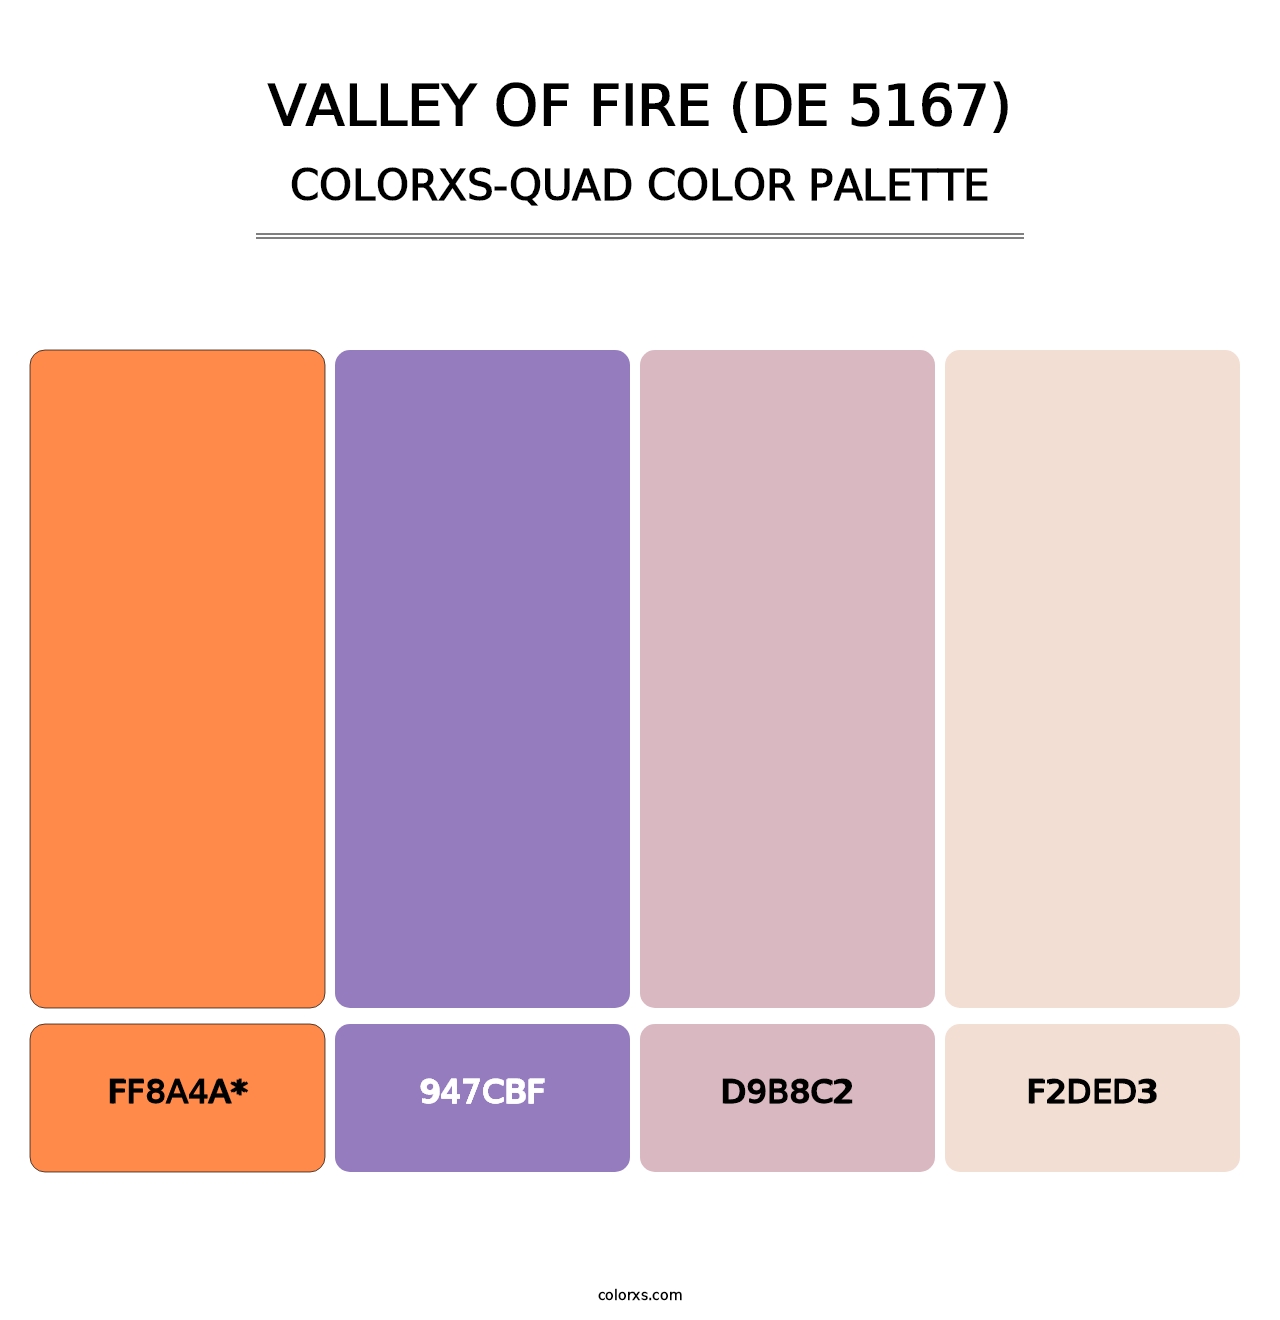 Valley of Fire (DE 5167) - Colorxs Quad Palette